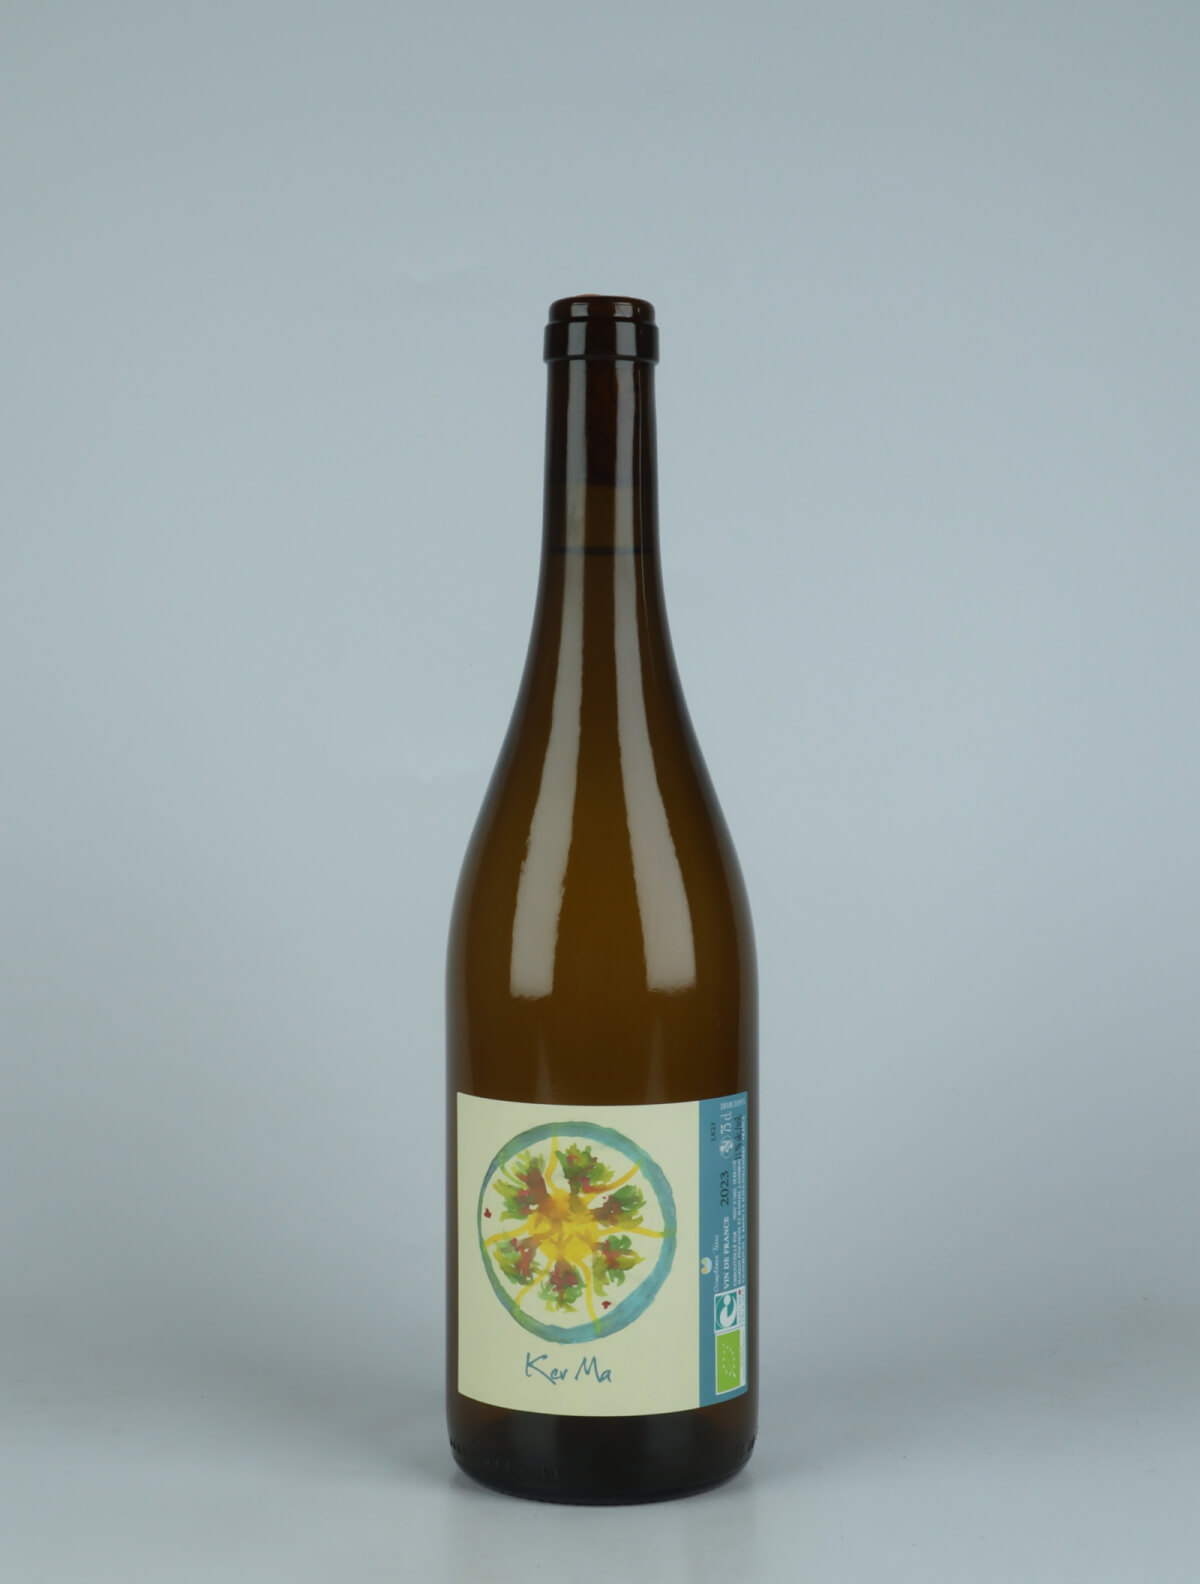 A bottle 2023 Ker Ma White wine from Complémen'terre, Loire in France